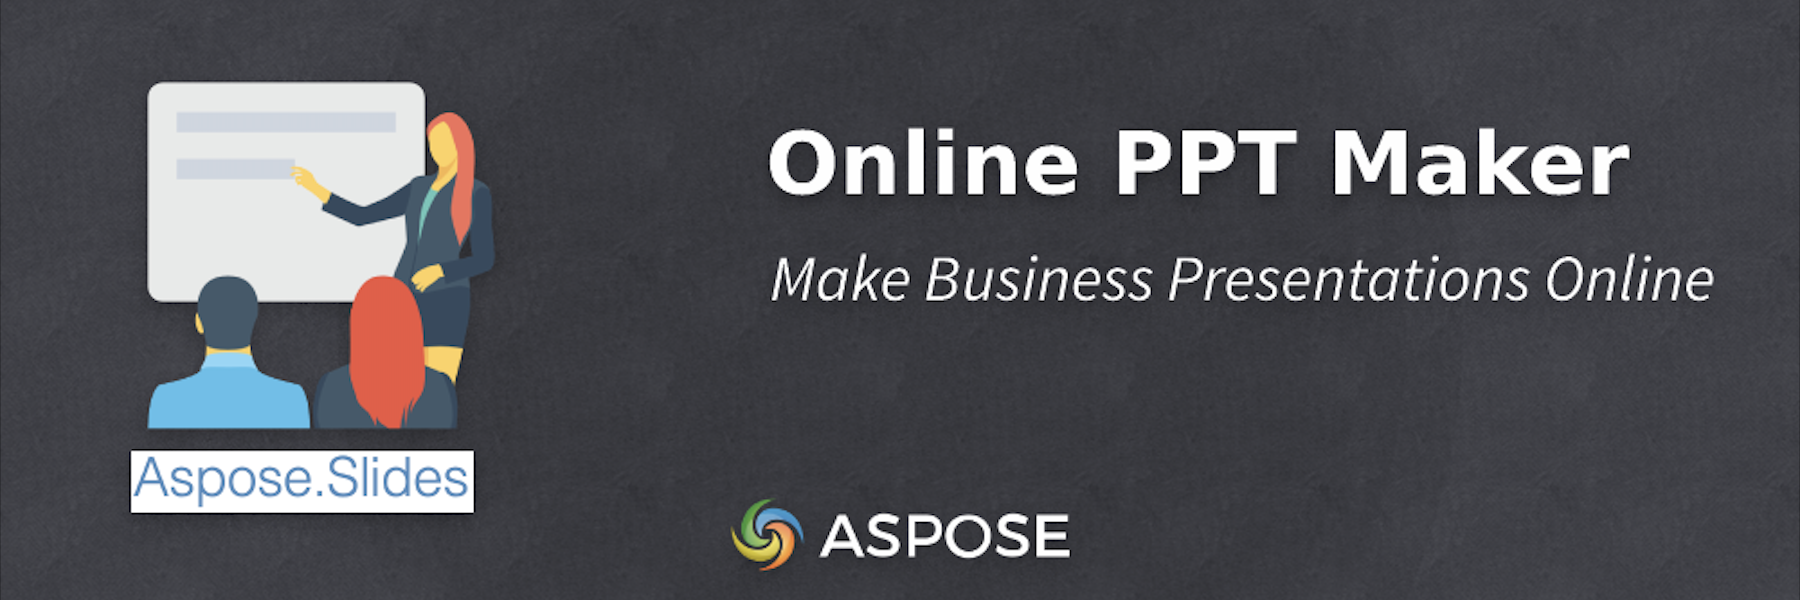 Online PPT Maker - Make Business Presentations Online